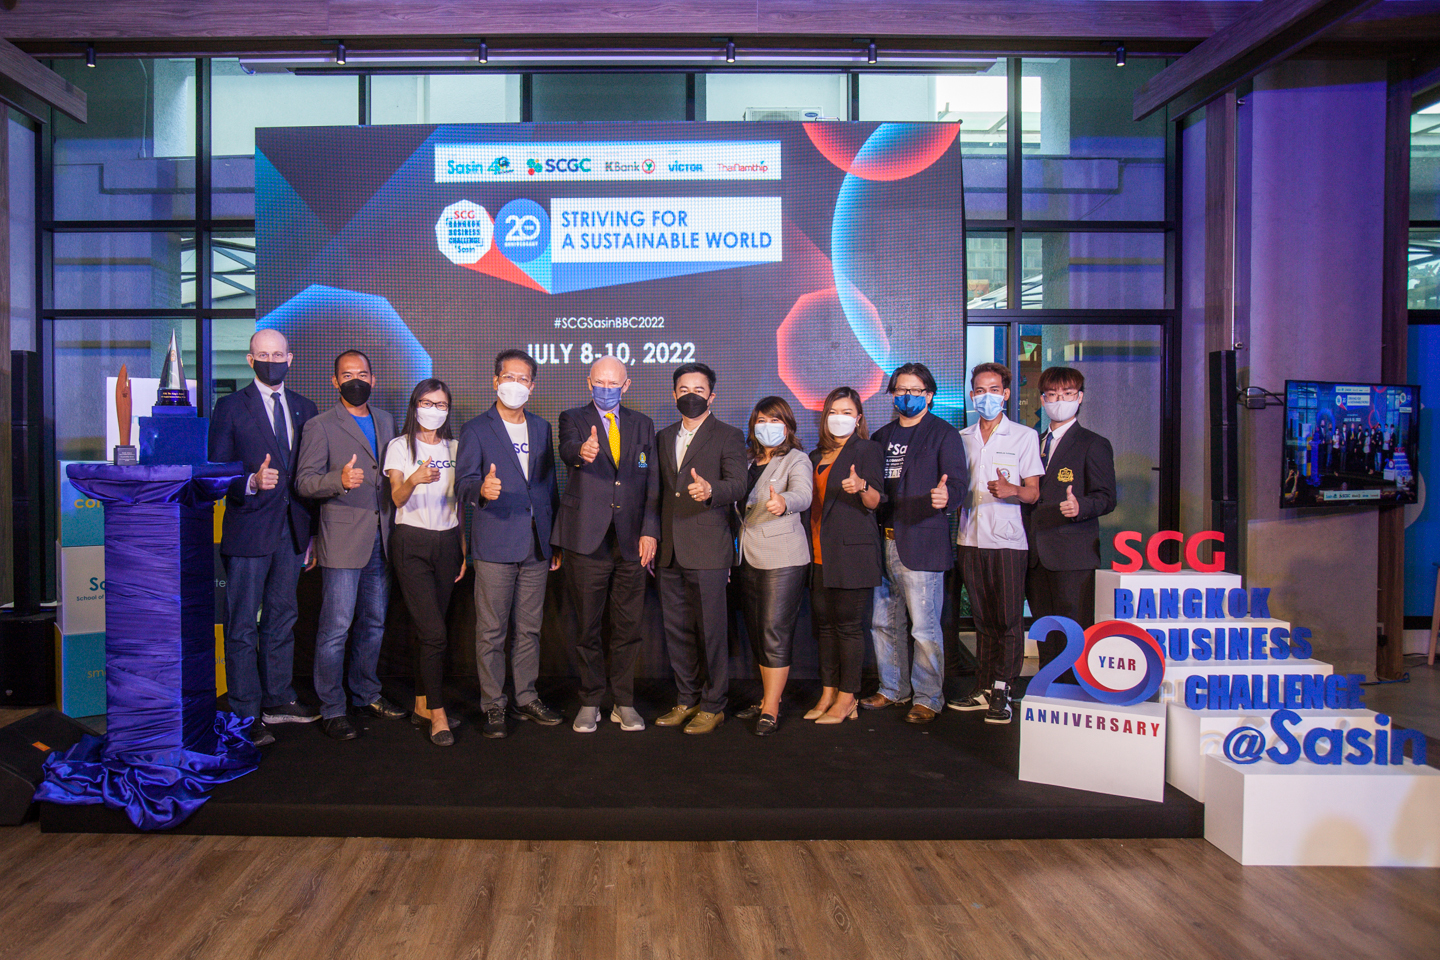 ศศินทร์ และ เอสซีจี เคมิคอลส์ (SCGC) เปิดเวที “SCG Bangkok Business Challenge @ Sasin 2022 – Global Competition” การแข่งขันแผนธุรกิจ Startup ระดับโลก ระหว่างวันที่ 8 – 10 กรกฎาคมนี้ ที่ศศินทร์